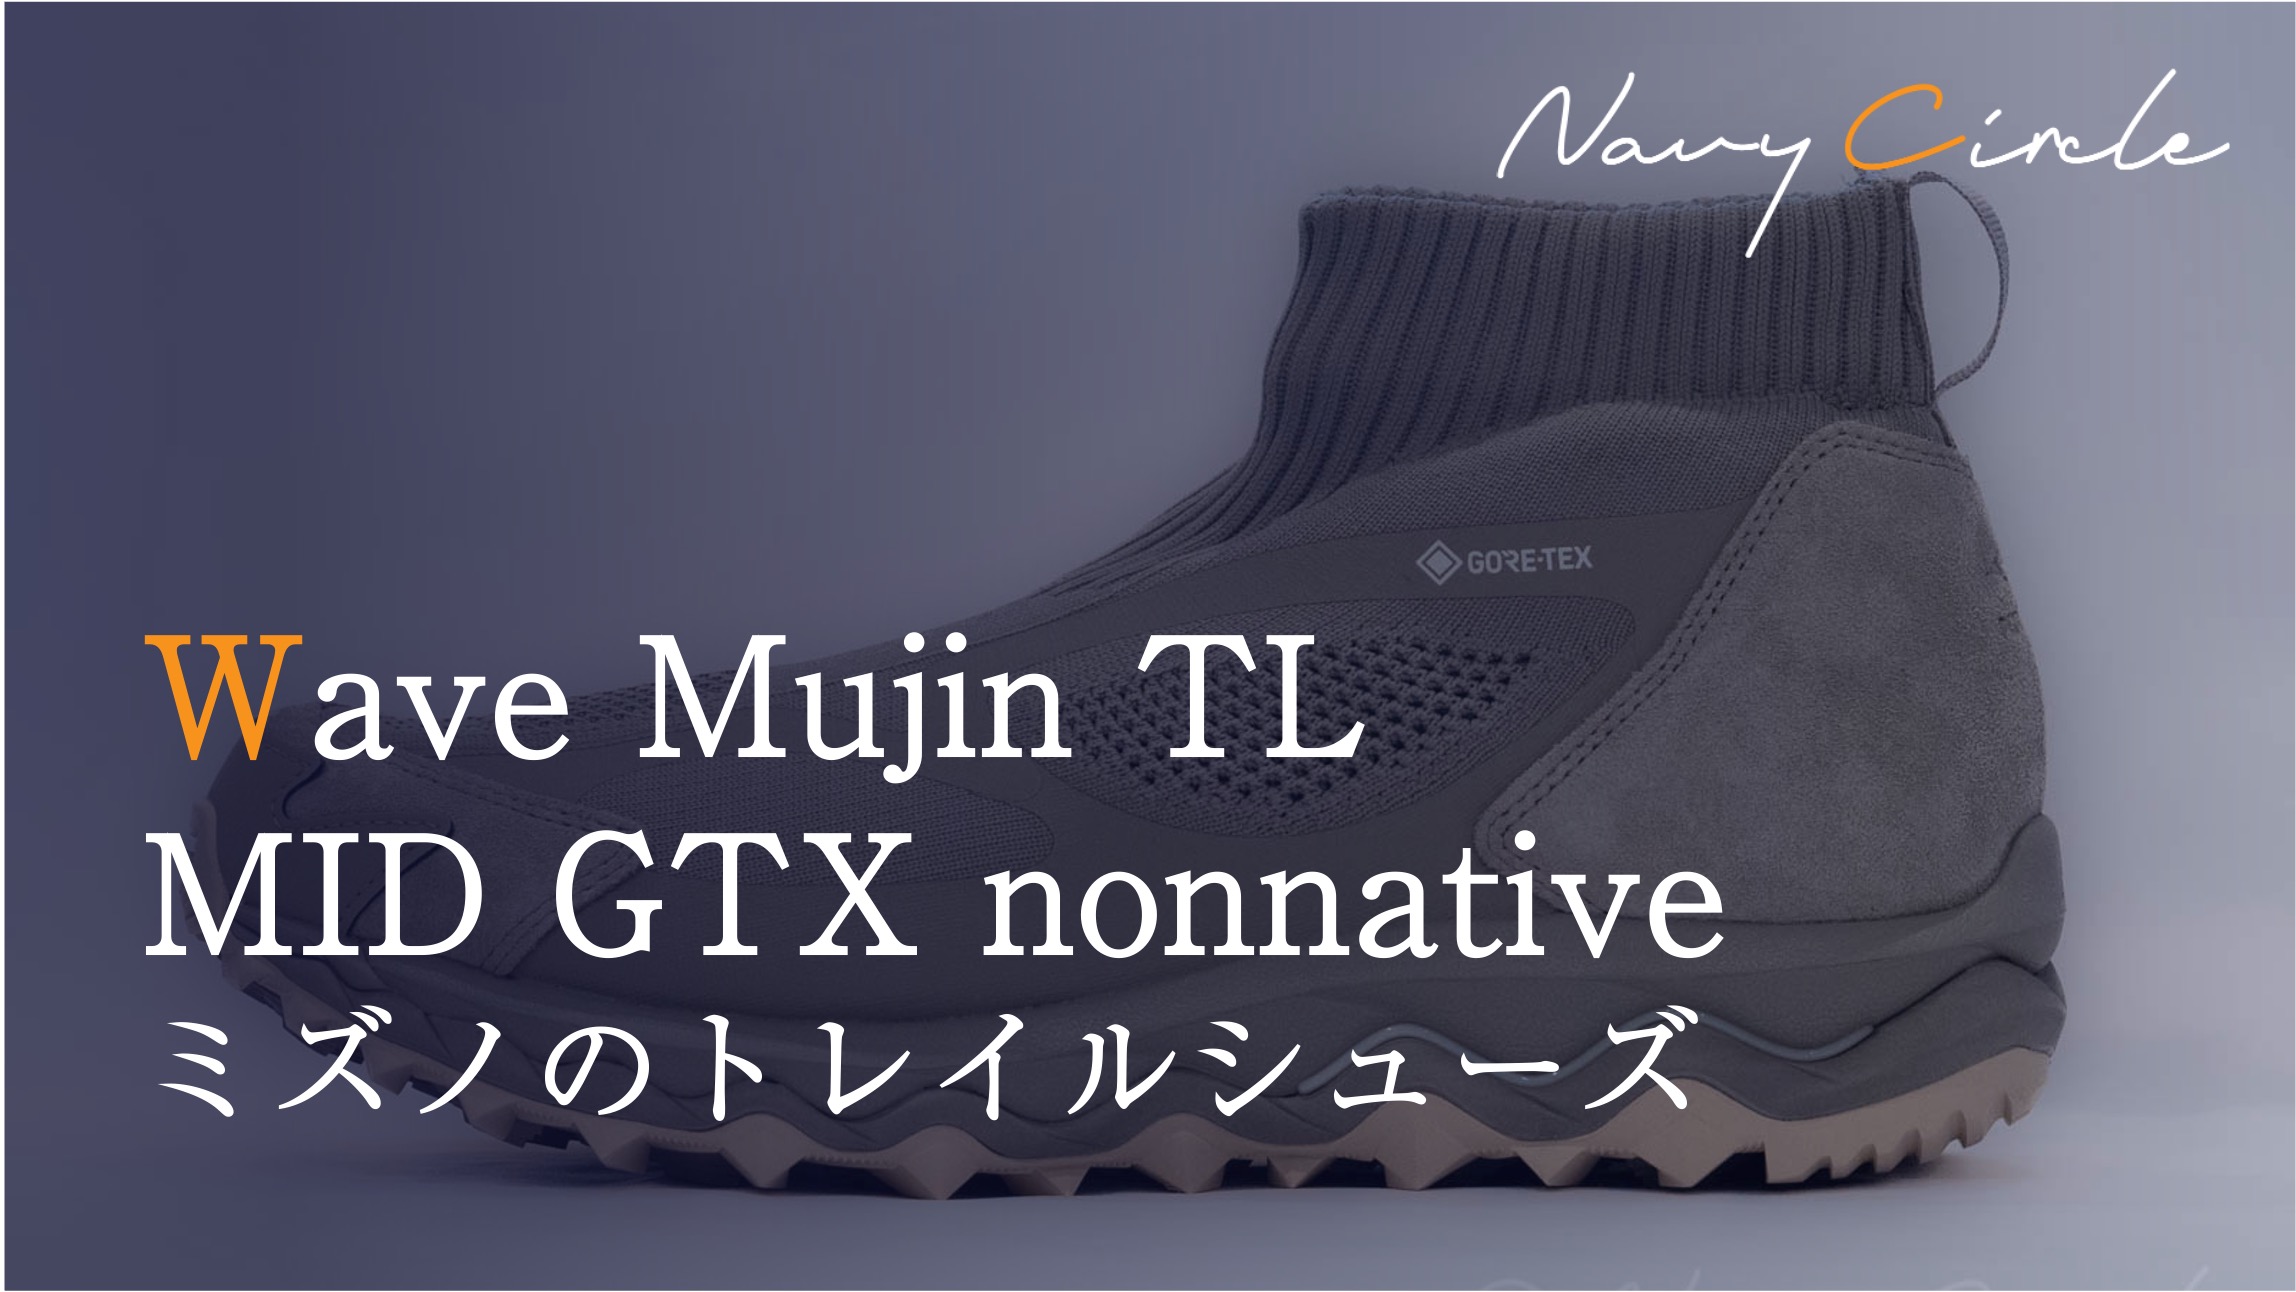 ミズノのトレイルシューズ「Wave Mujin TL MID GTX nonnative」| "Wave Mujin TL MID GTX nonnative" by Mizuno